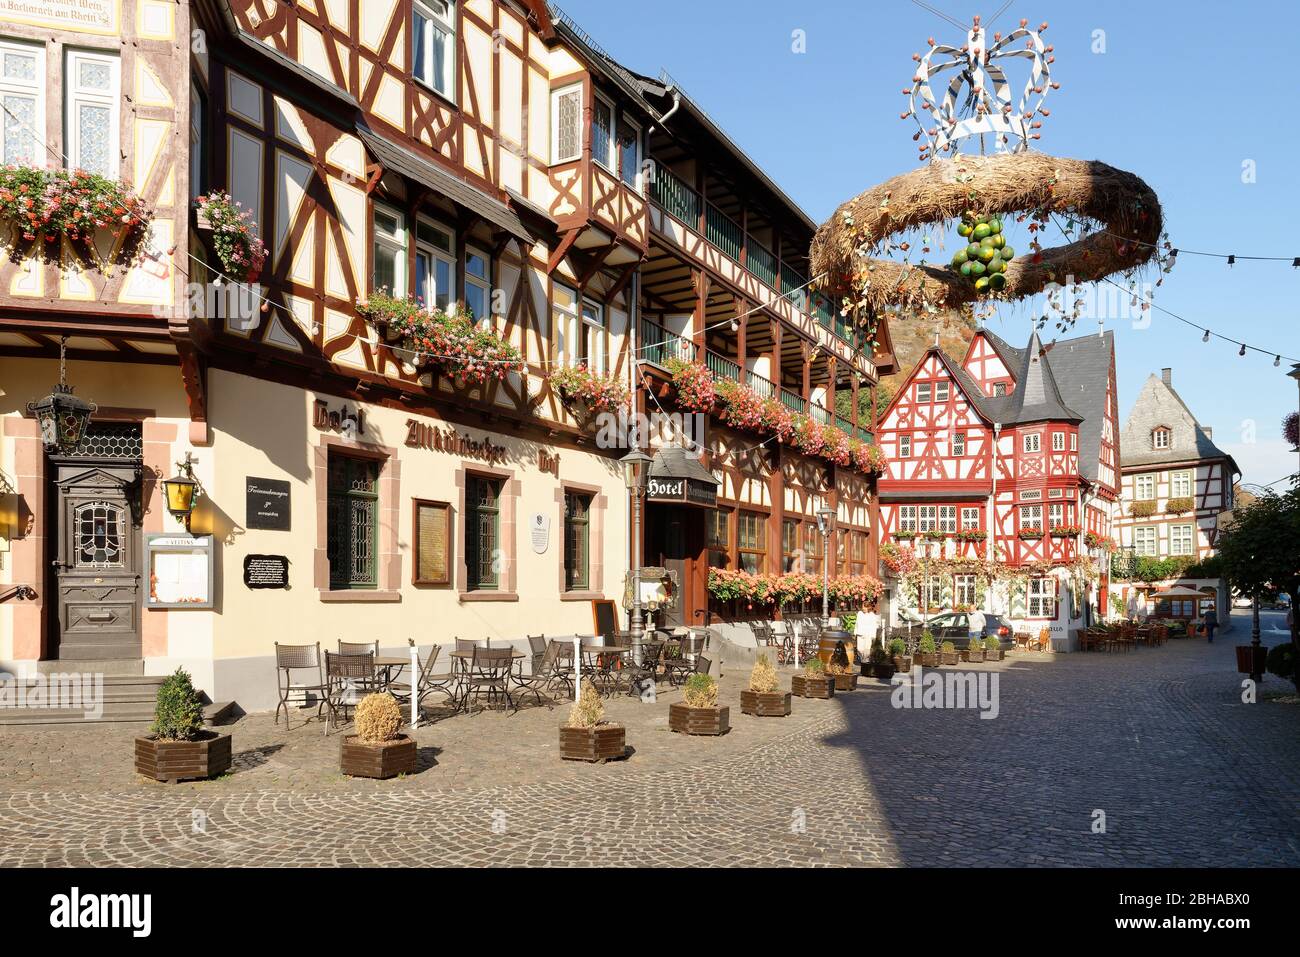 Ancien marché avec maisons à colombages à Bacharach am Rhein, Bacharach, vallée du Rhin, UNESCO World Heritage Upper Middle Rhin Valley, Rhénanie-Palatinat, Allemagne Banque D'Images